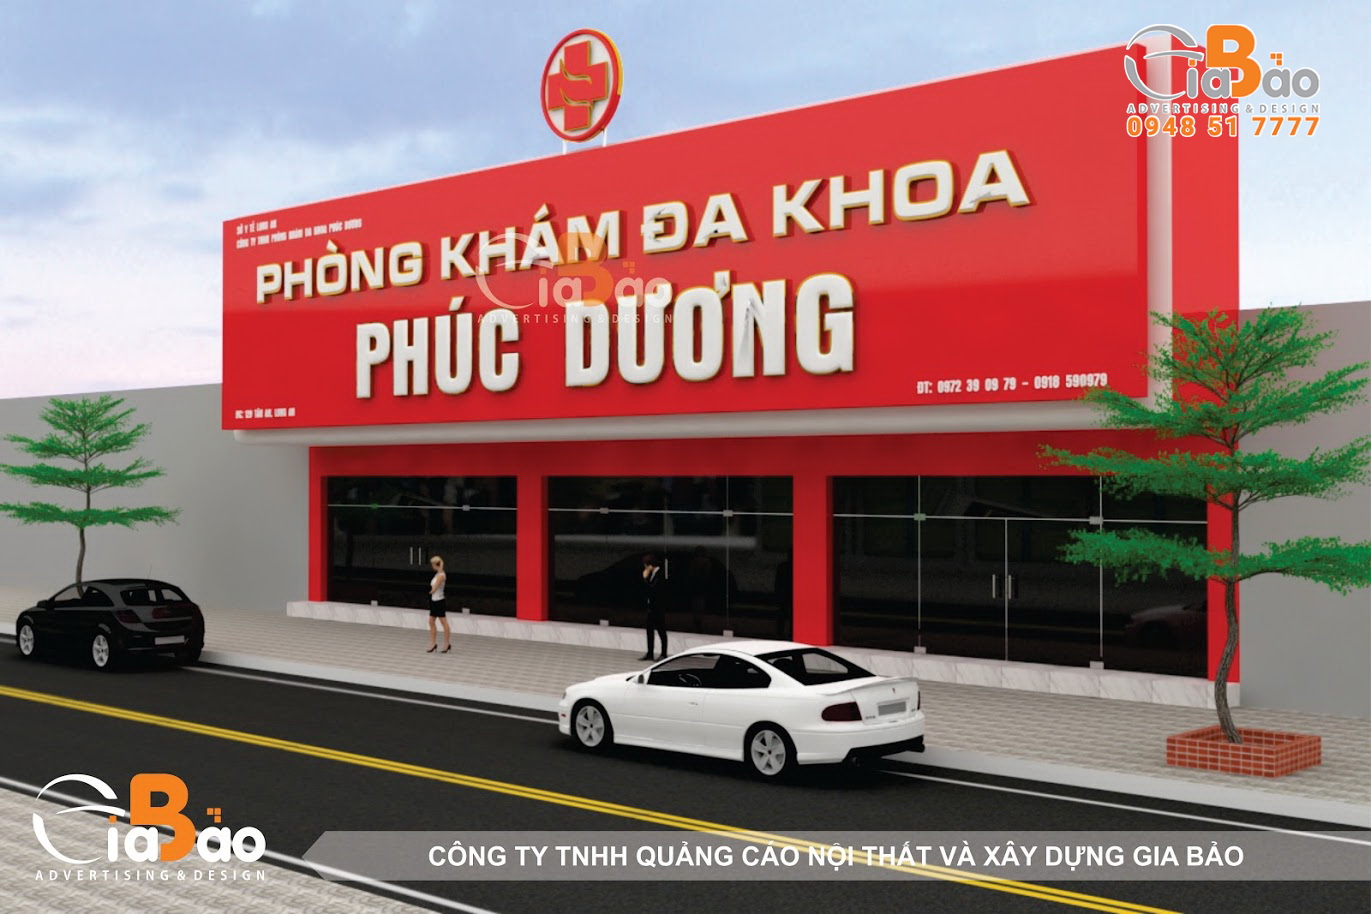 Phuc Duong Clinic